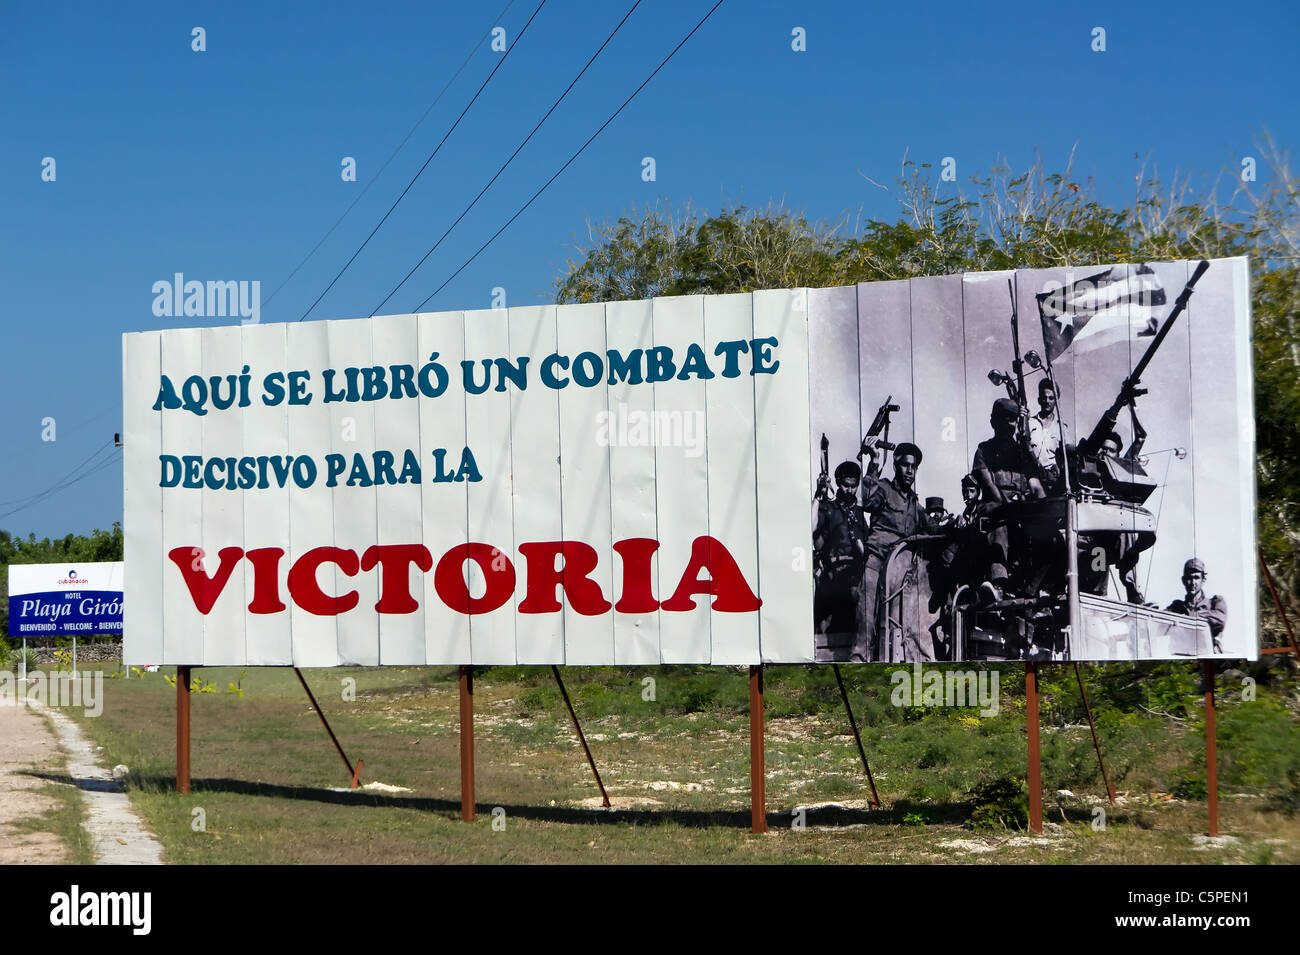 La victoire de la Baie des Cochons cubaine panneau routier de propagande, Playa Giron, Cuba Banque D'Images